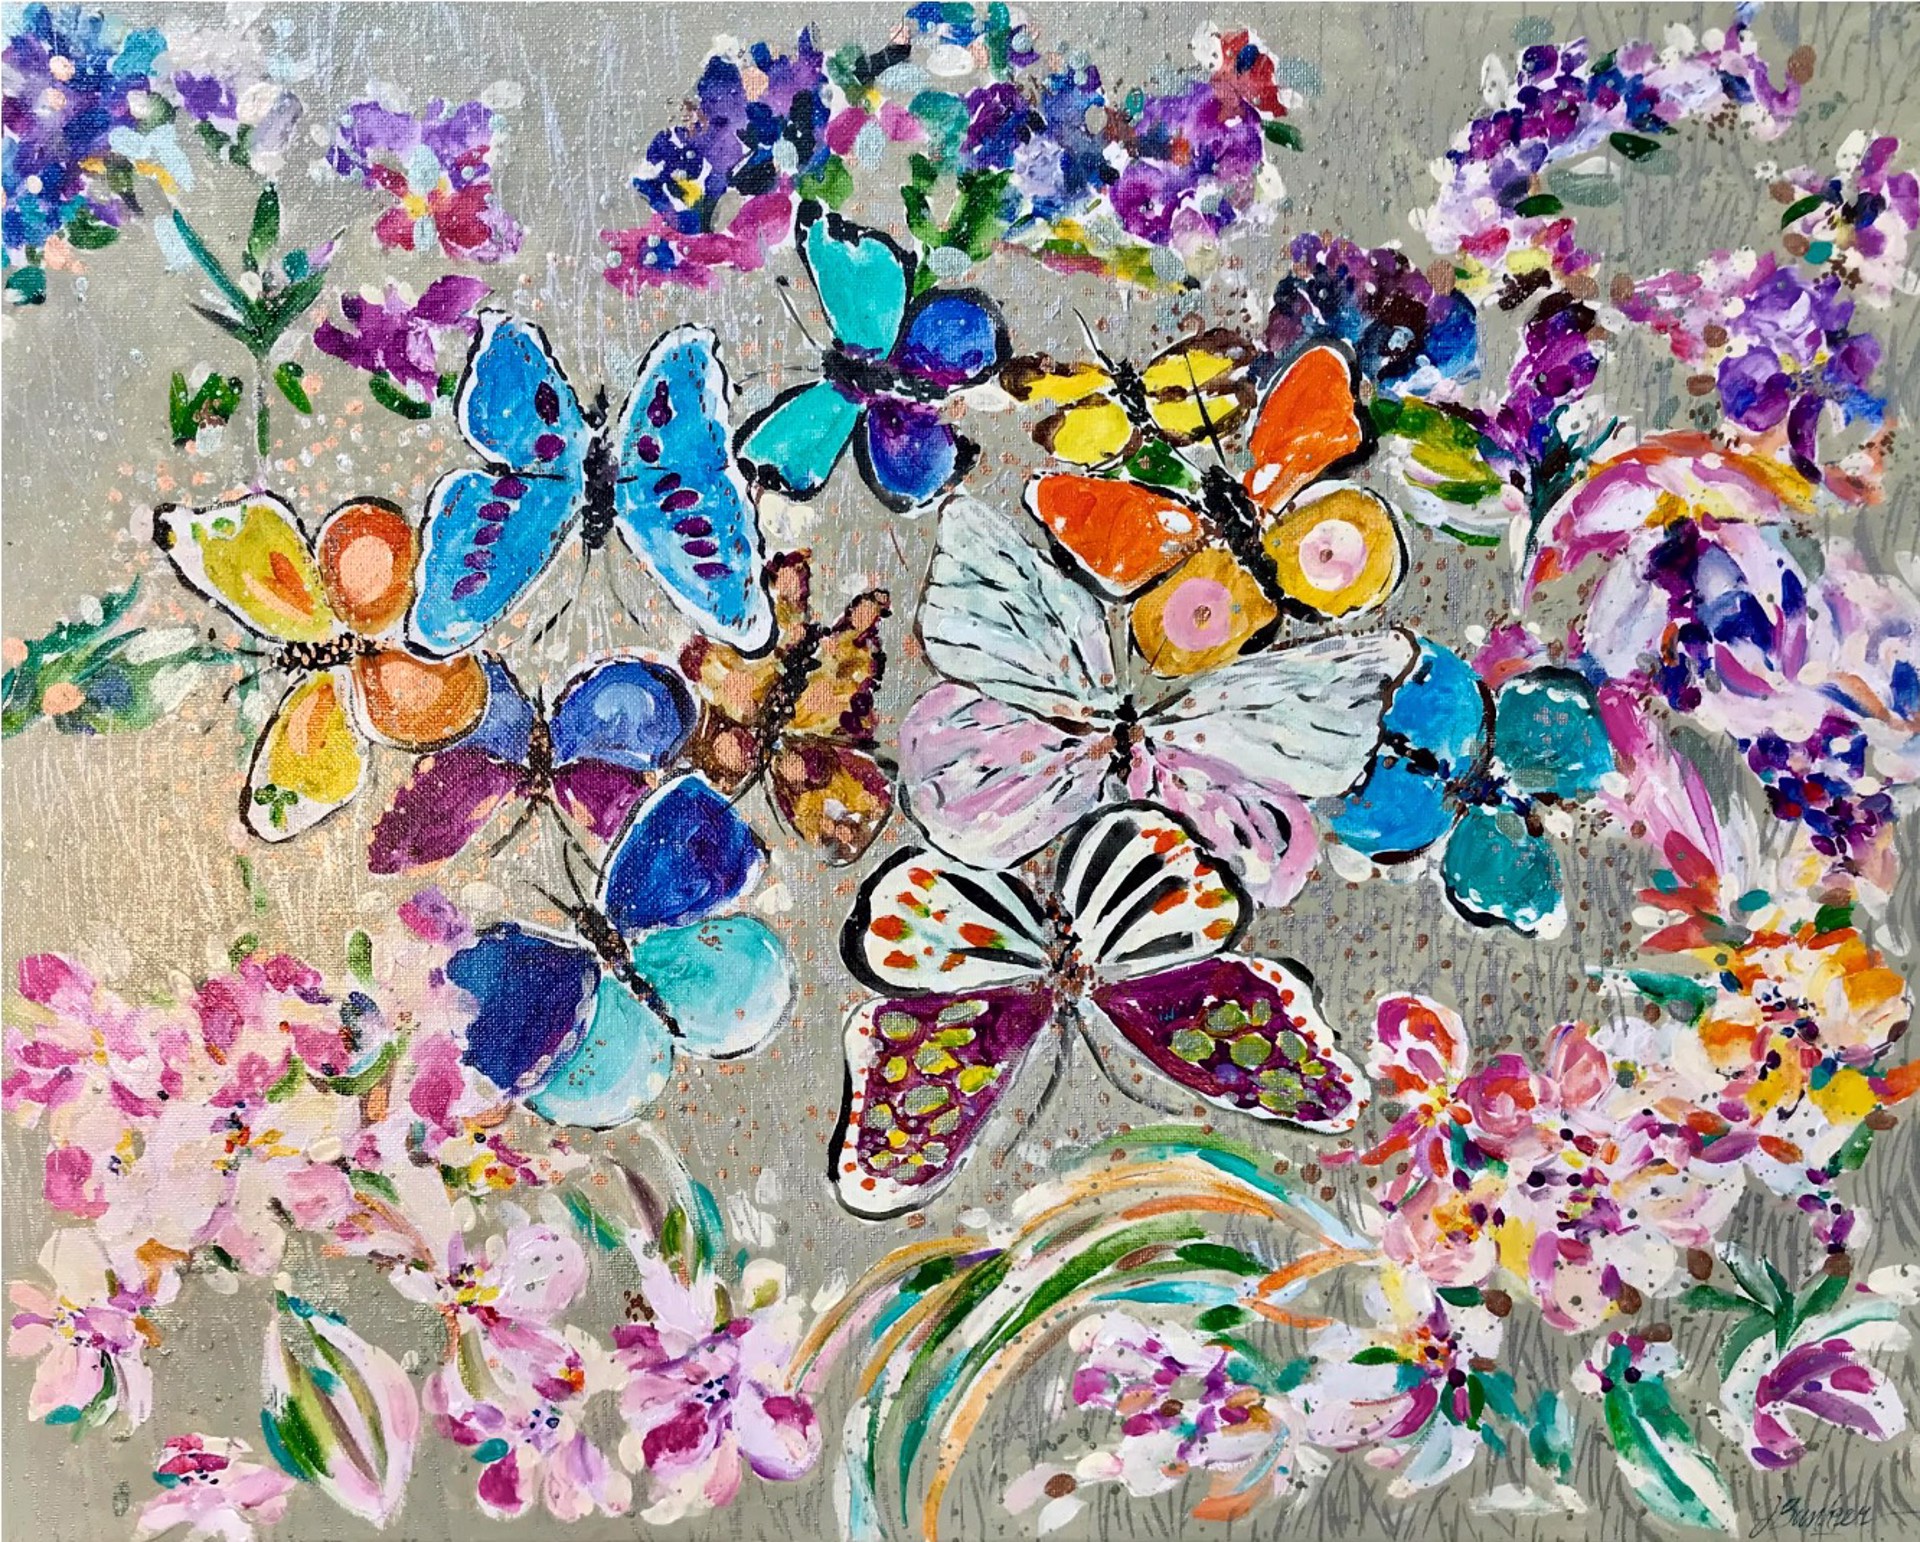 Butterfly Garden by John Bunker